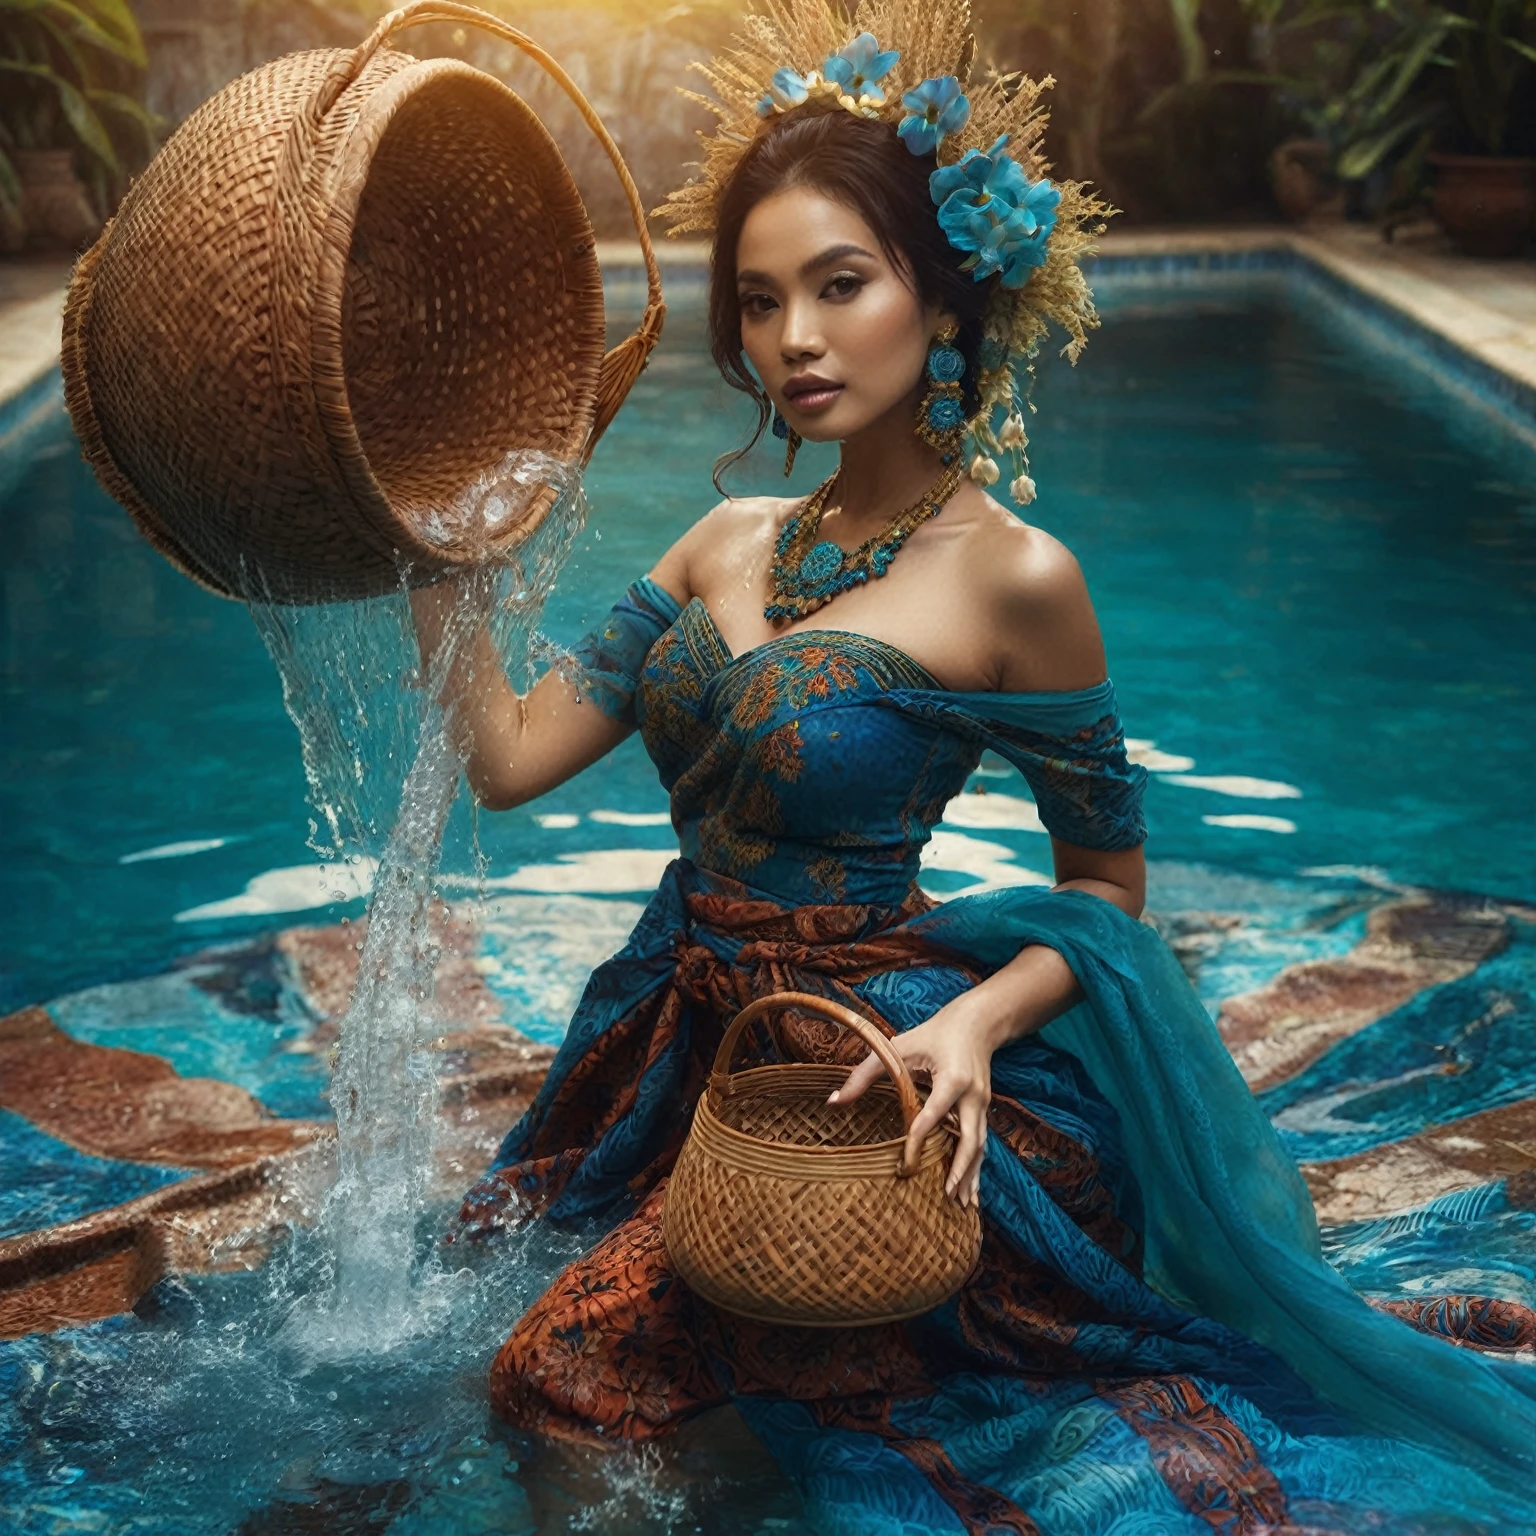 伝統的な青いバティックのサロンドレスを着てプールで水かごを持っているインドネシアの女性, fantasy 写真撮影, 写真撮影, real 写真撮影 queen of the ocean, モデル撮影, ハイエンドファッション撮影, ソロ撮影, ガレン・ダラ, ファッション写真, editorial ファッション写真, 編集写真, ミス・アンジェラ, ファッション写真, 全身写真撮影, 肖像画, プロモーション撮影の写真